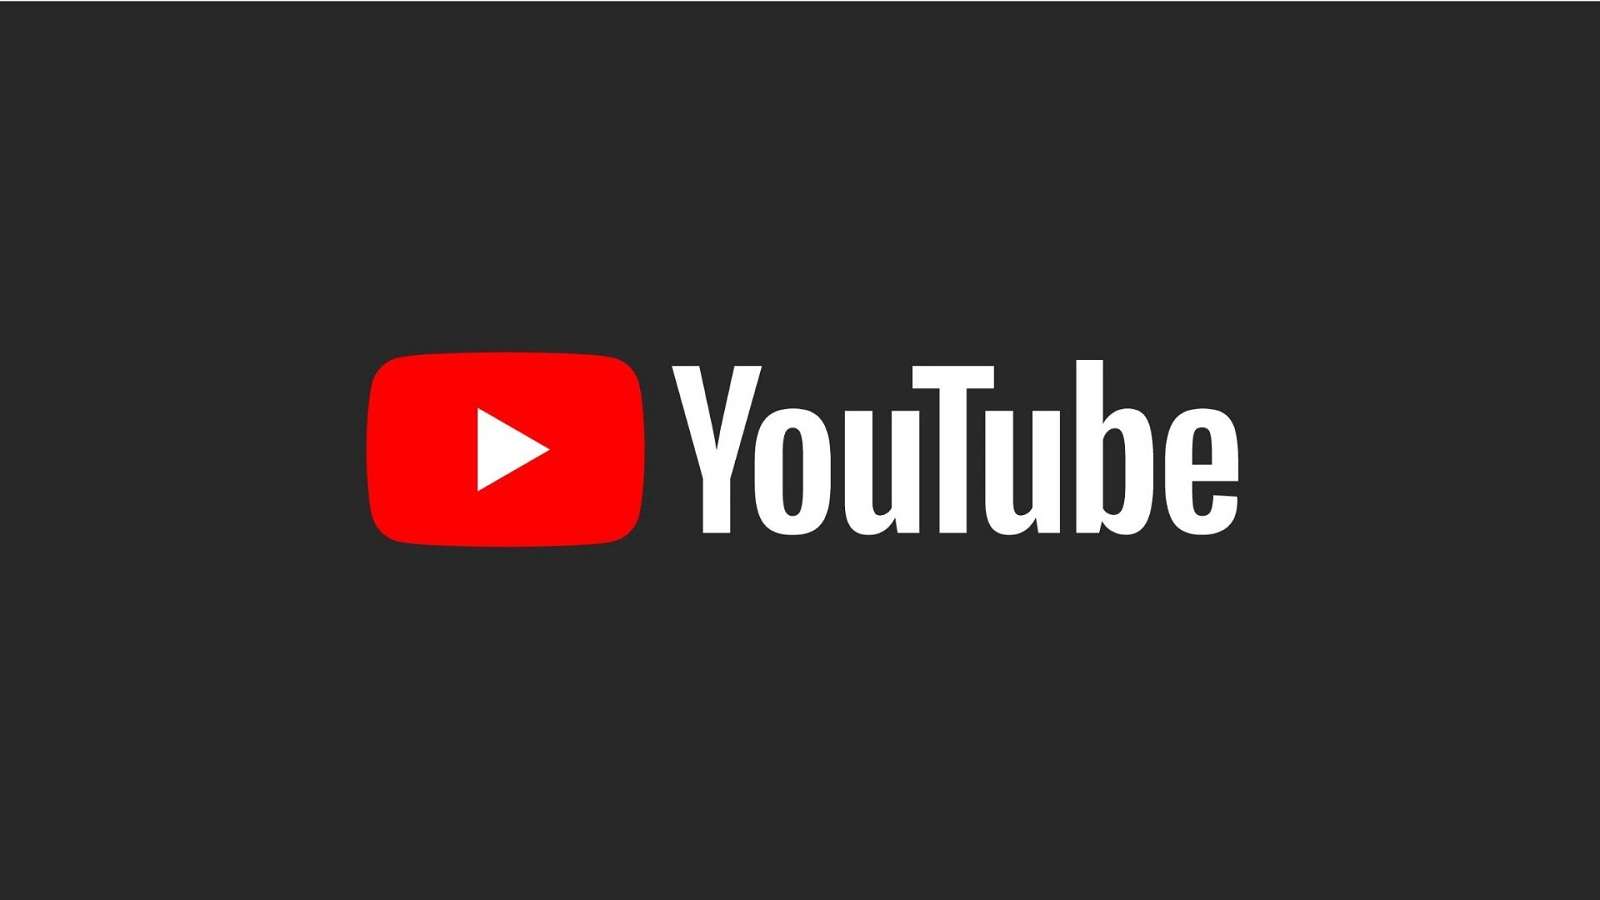 YouTube logo black background